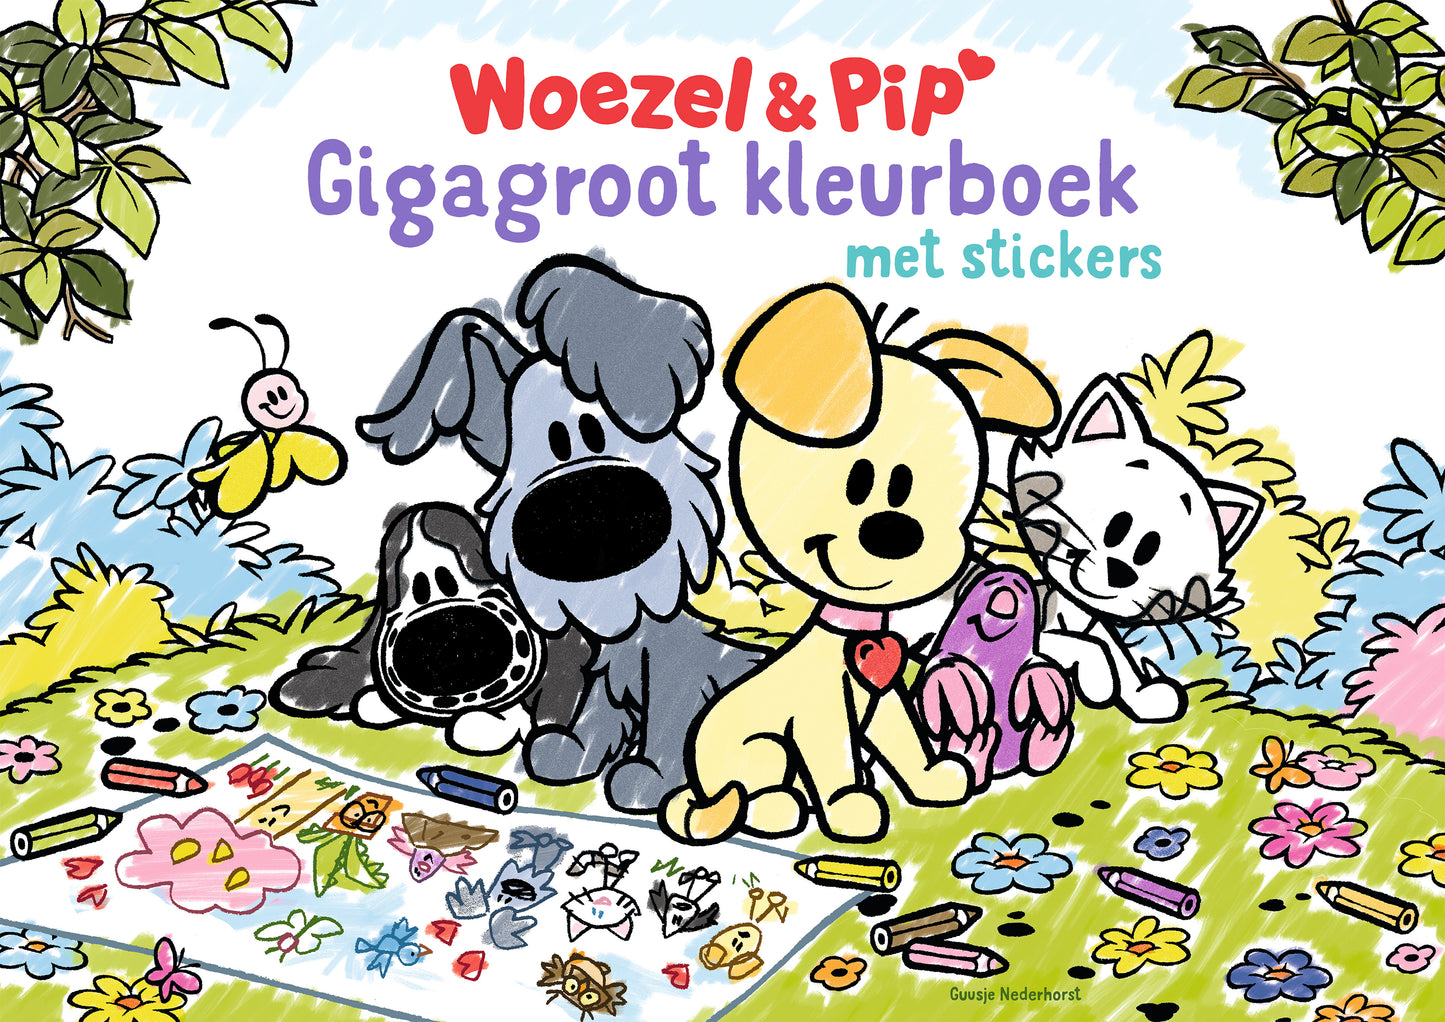 Woezel & Pip - Gigagroot Kleurboek